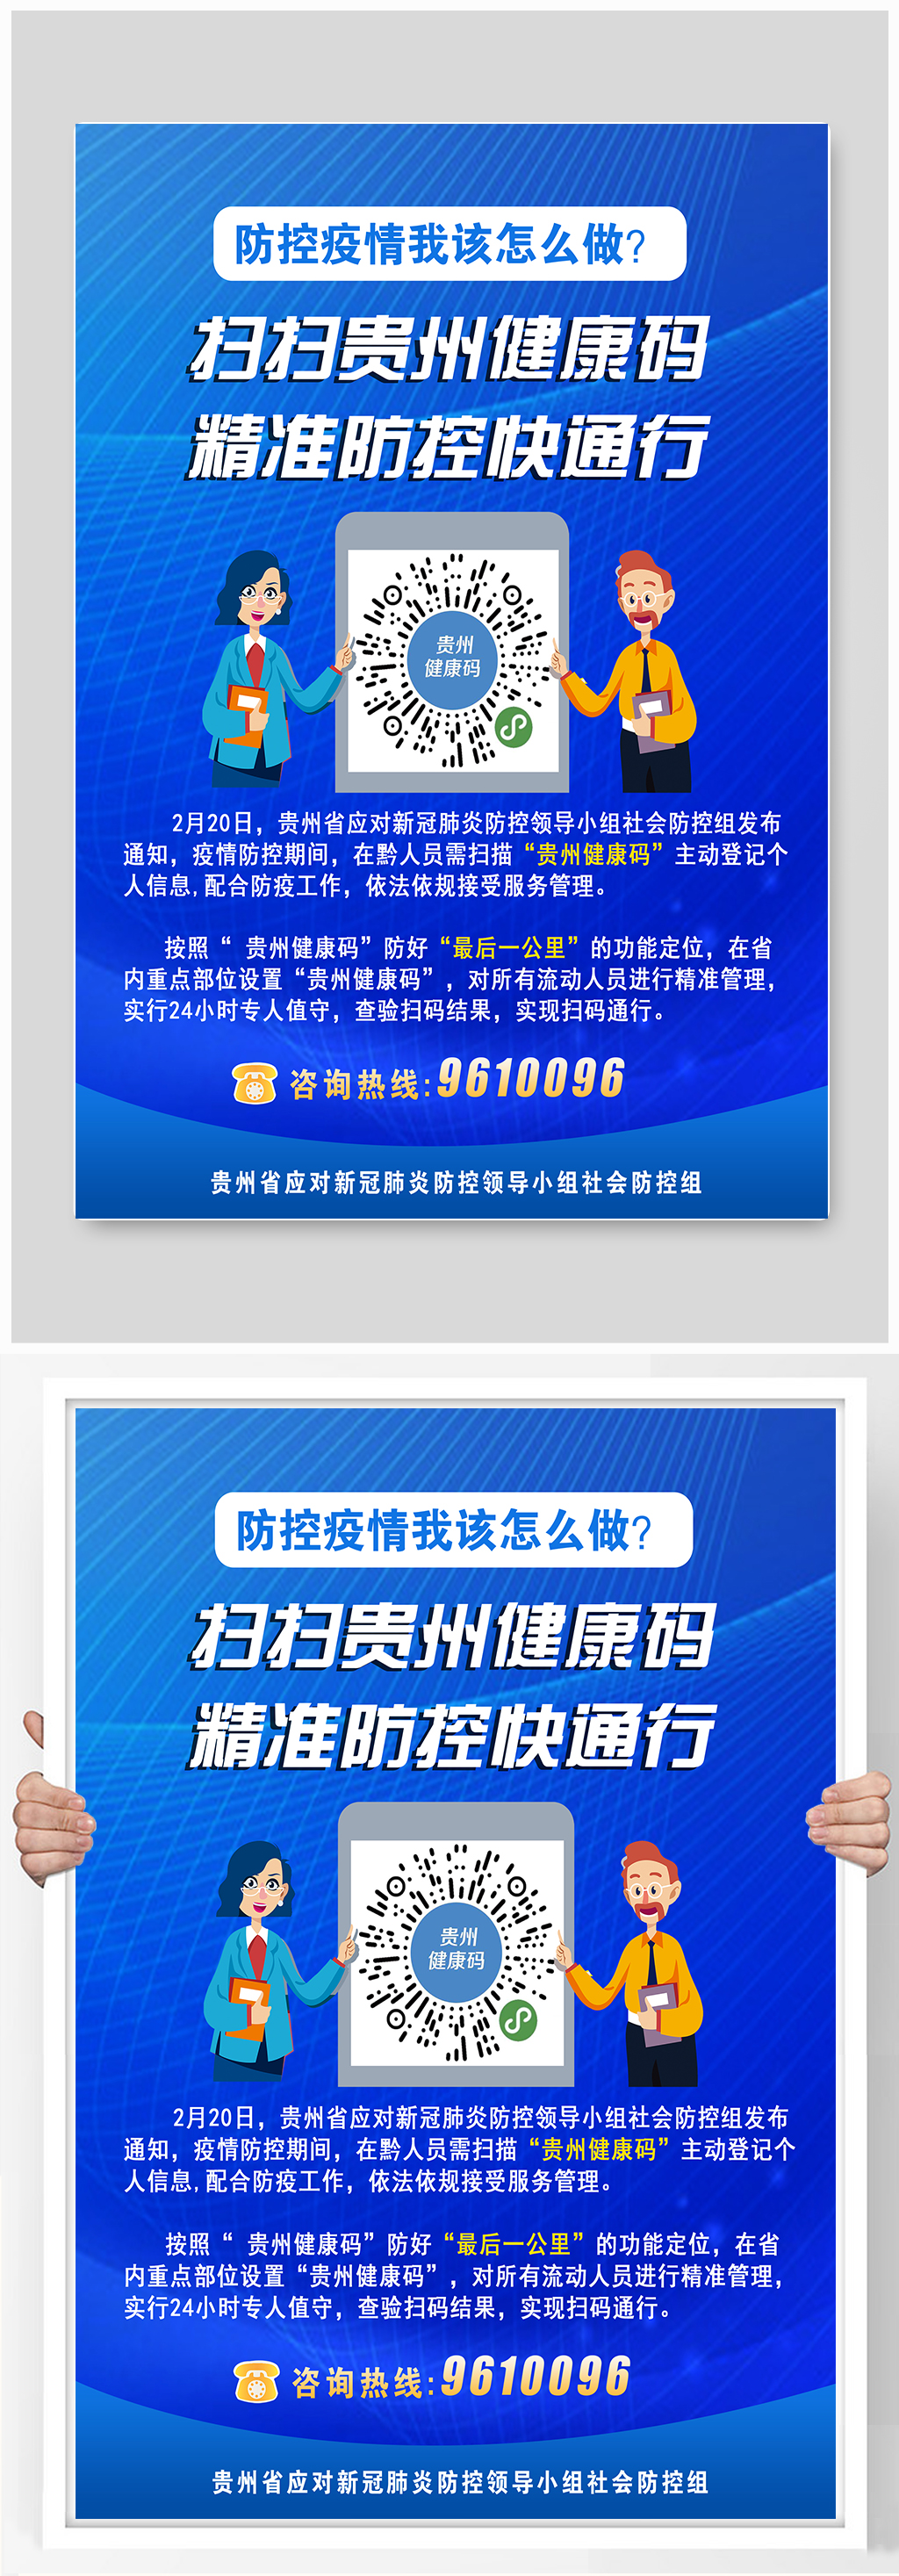 贵州省疫情扫码的码图图片